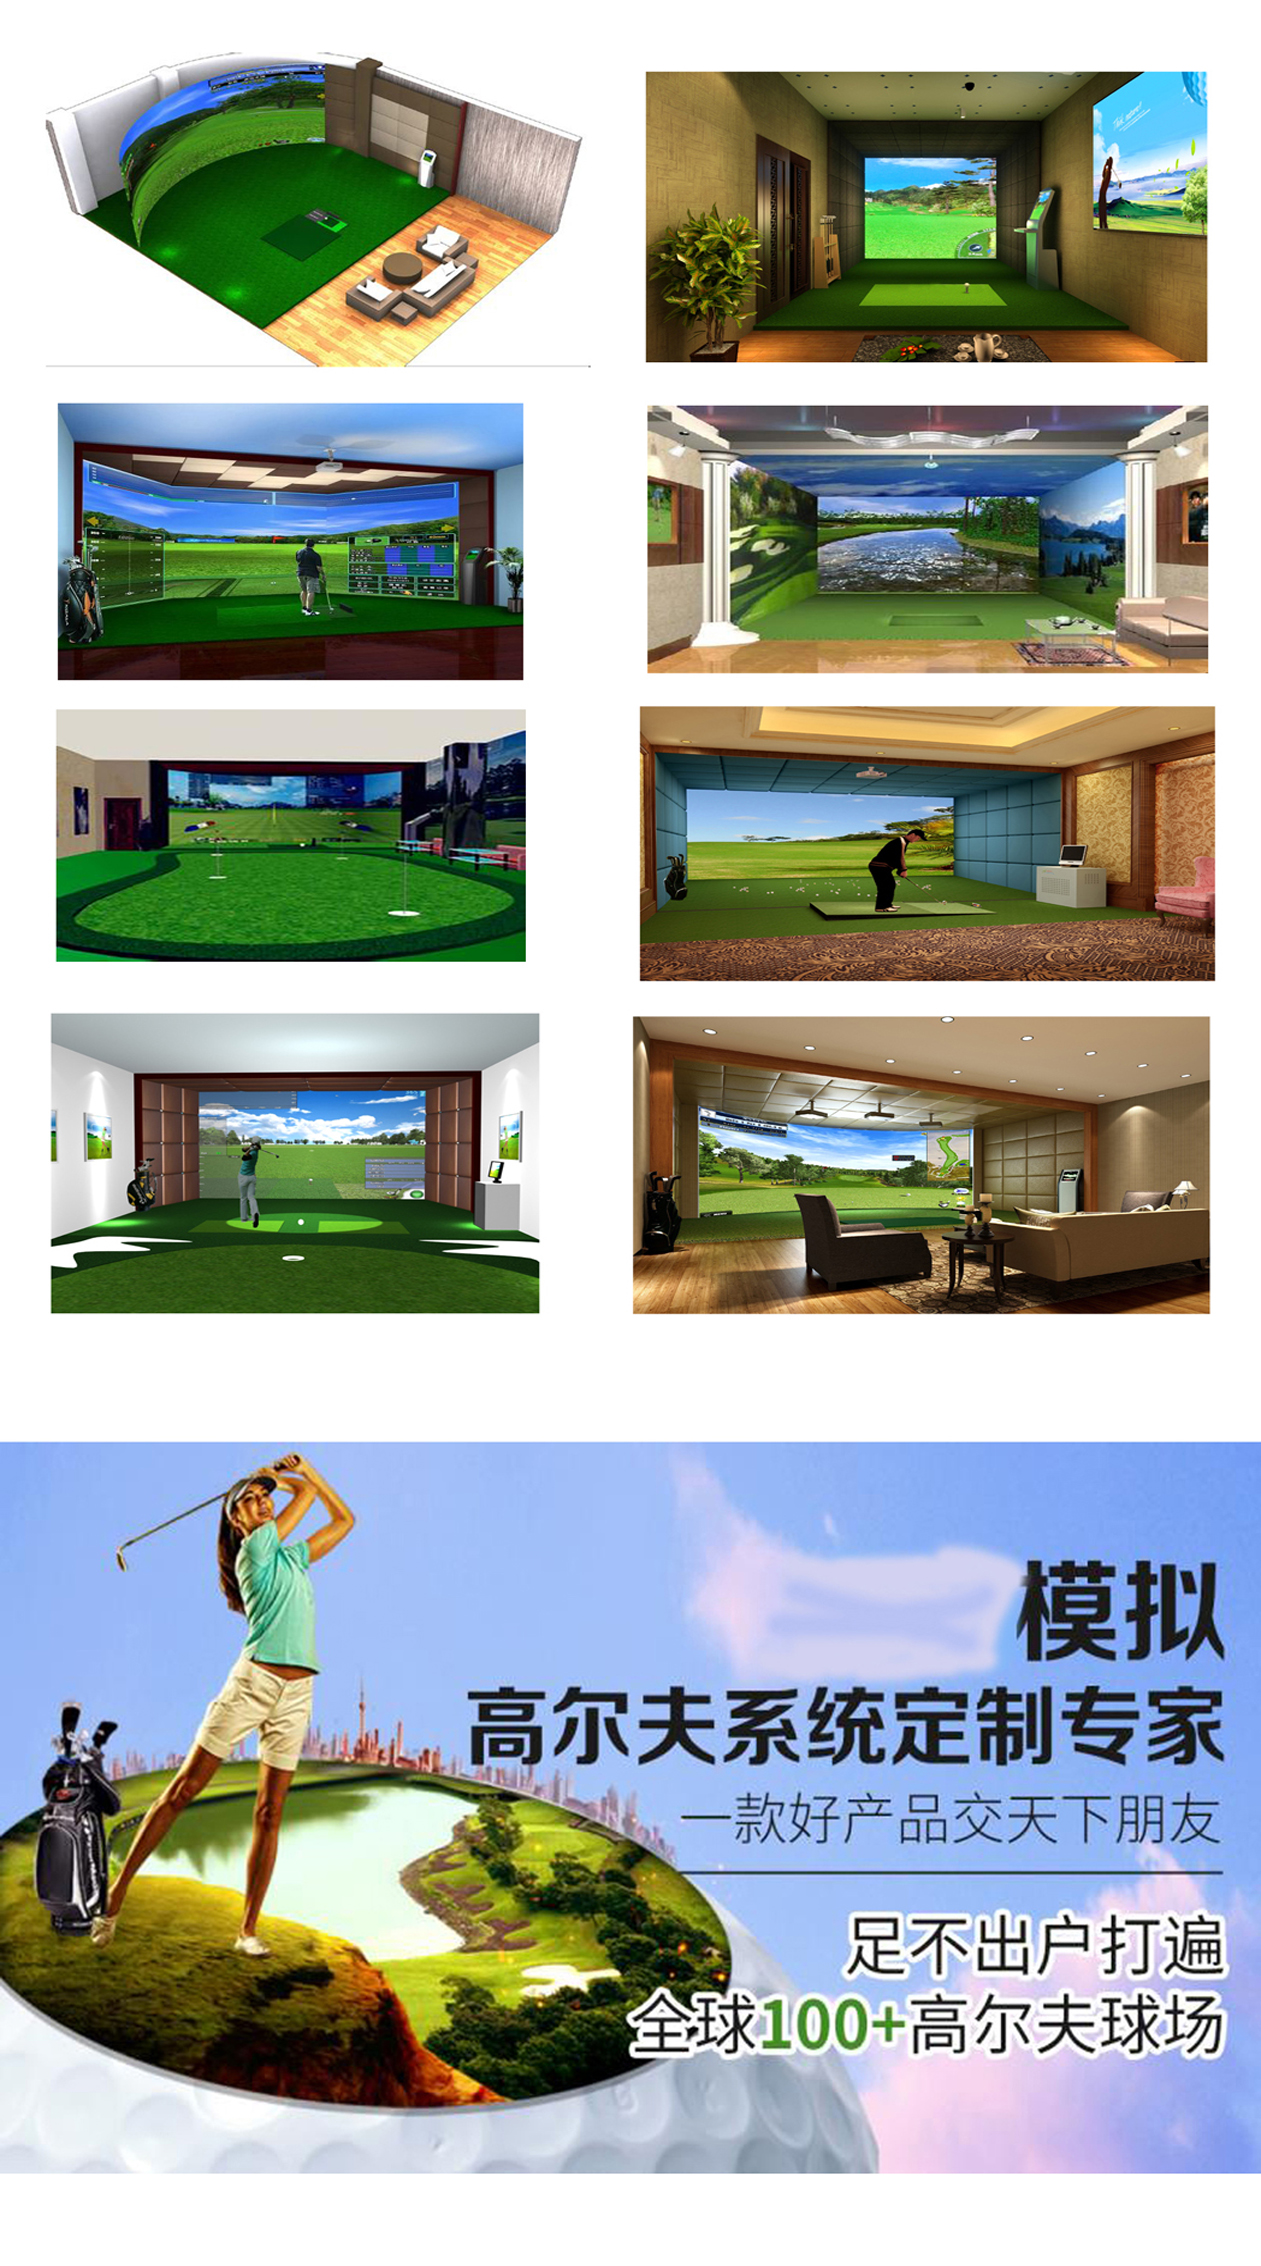 高尔夫模拟器设备案例 4.jpg